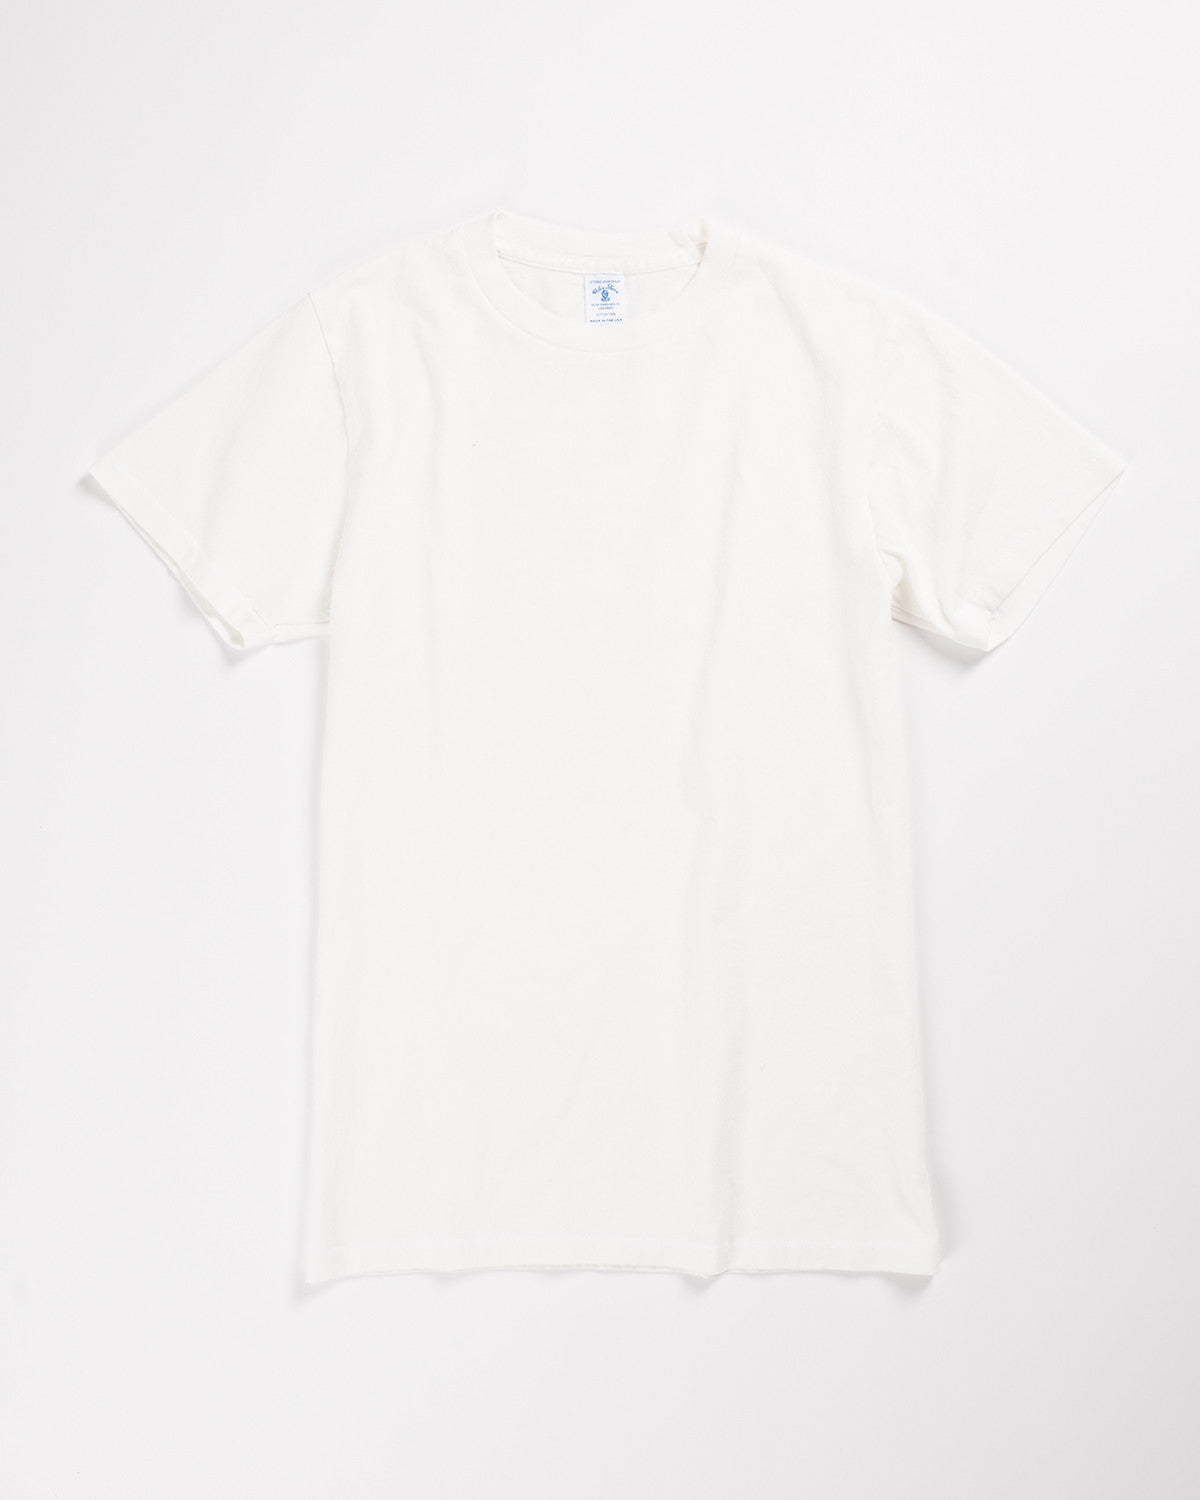 Velva Sheen T-Shirt 2 Pack White – Hand-Eye Supply